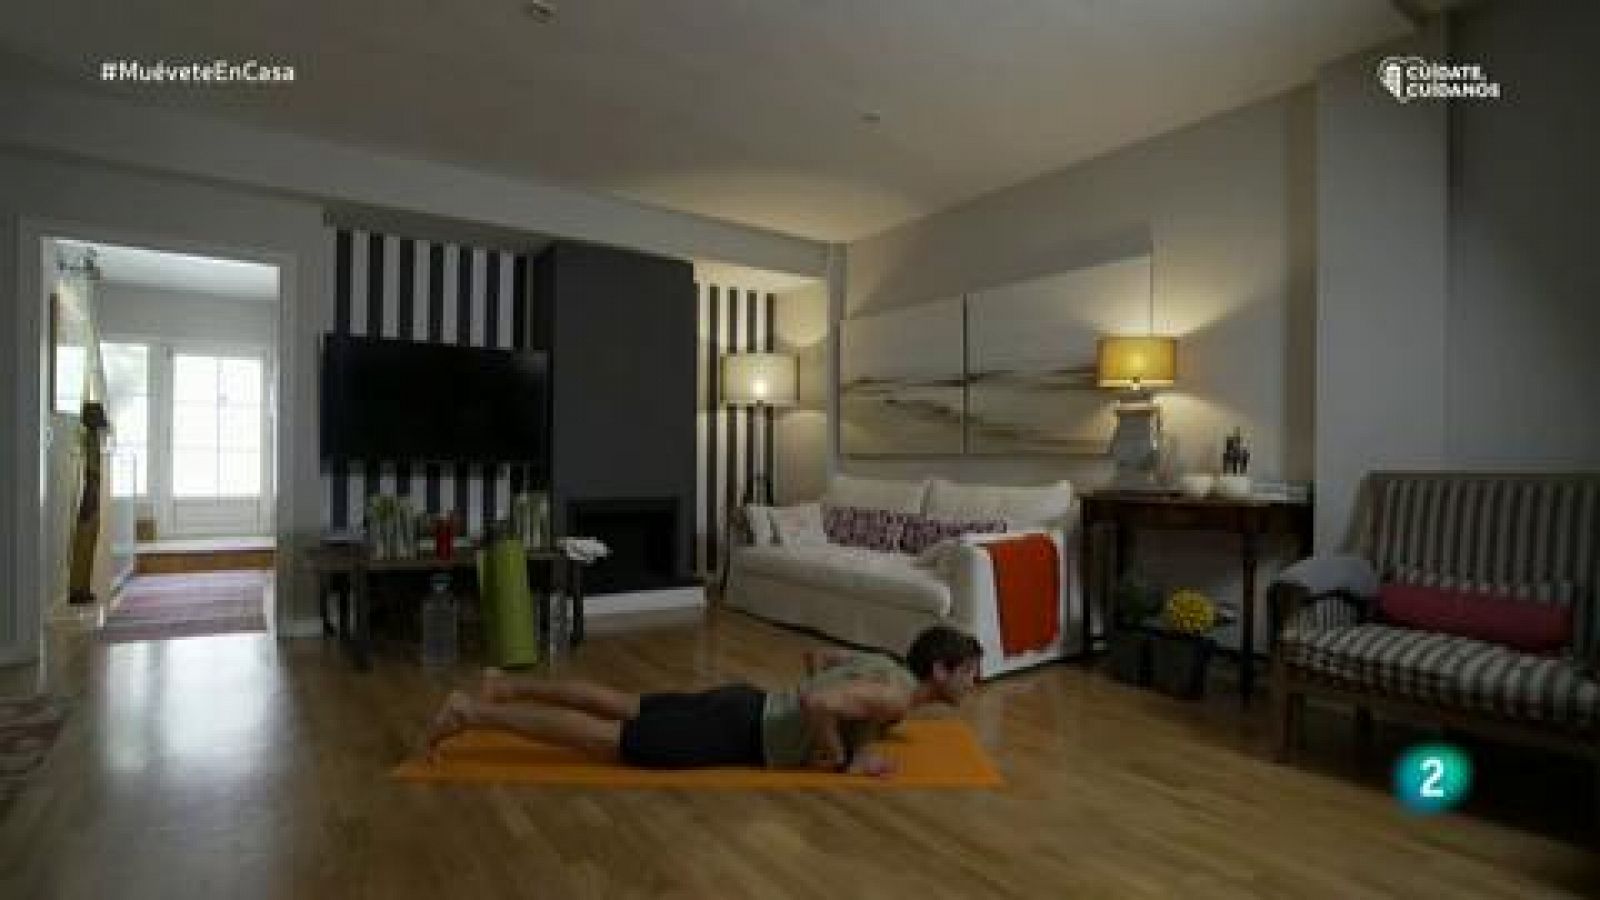 Muévete en casa - Bloque 1: Ejercicios de equilibrio y trabajo de piernas y brazos, para trabajar la parte central del cuerpo